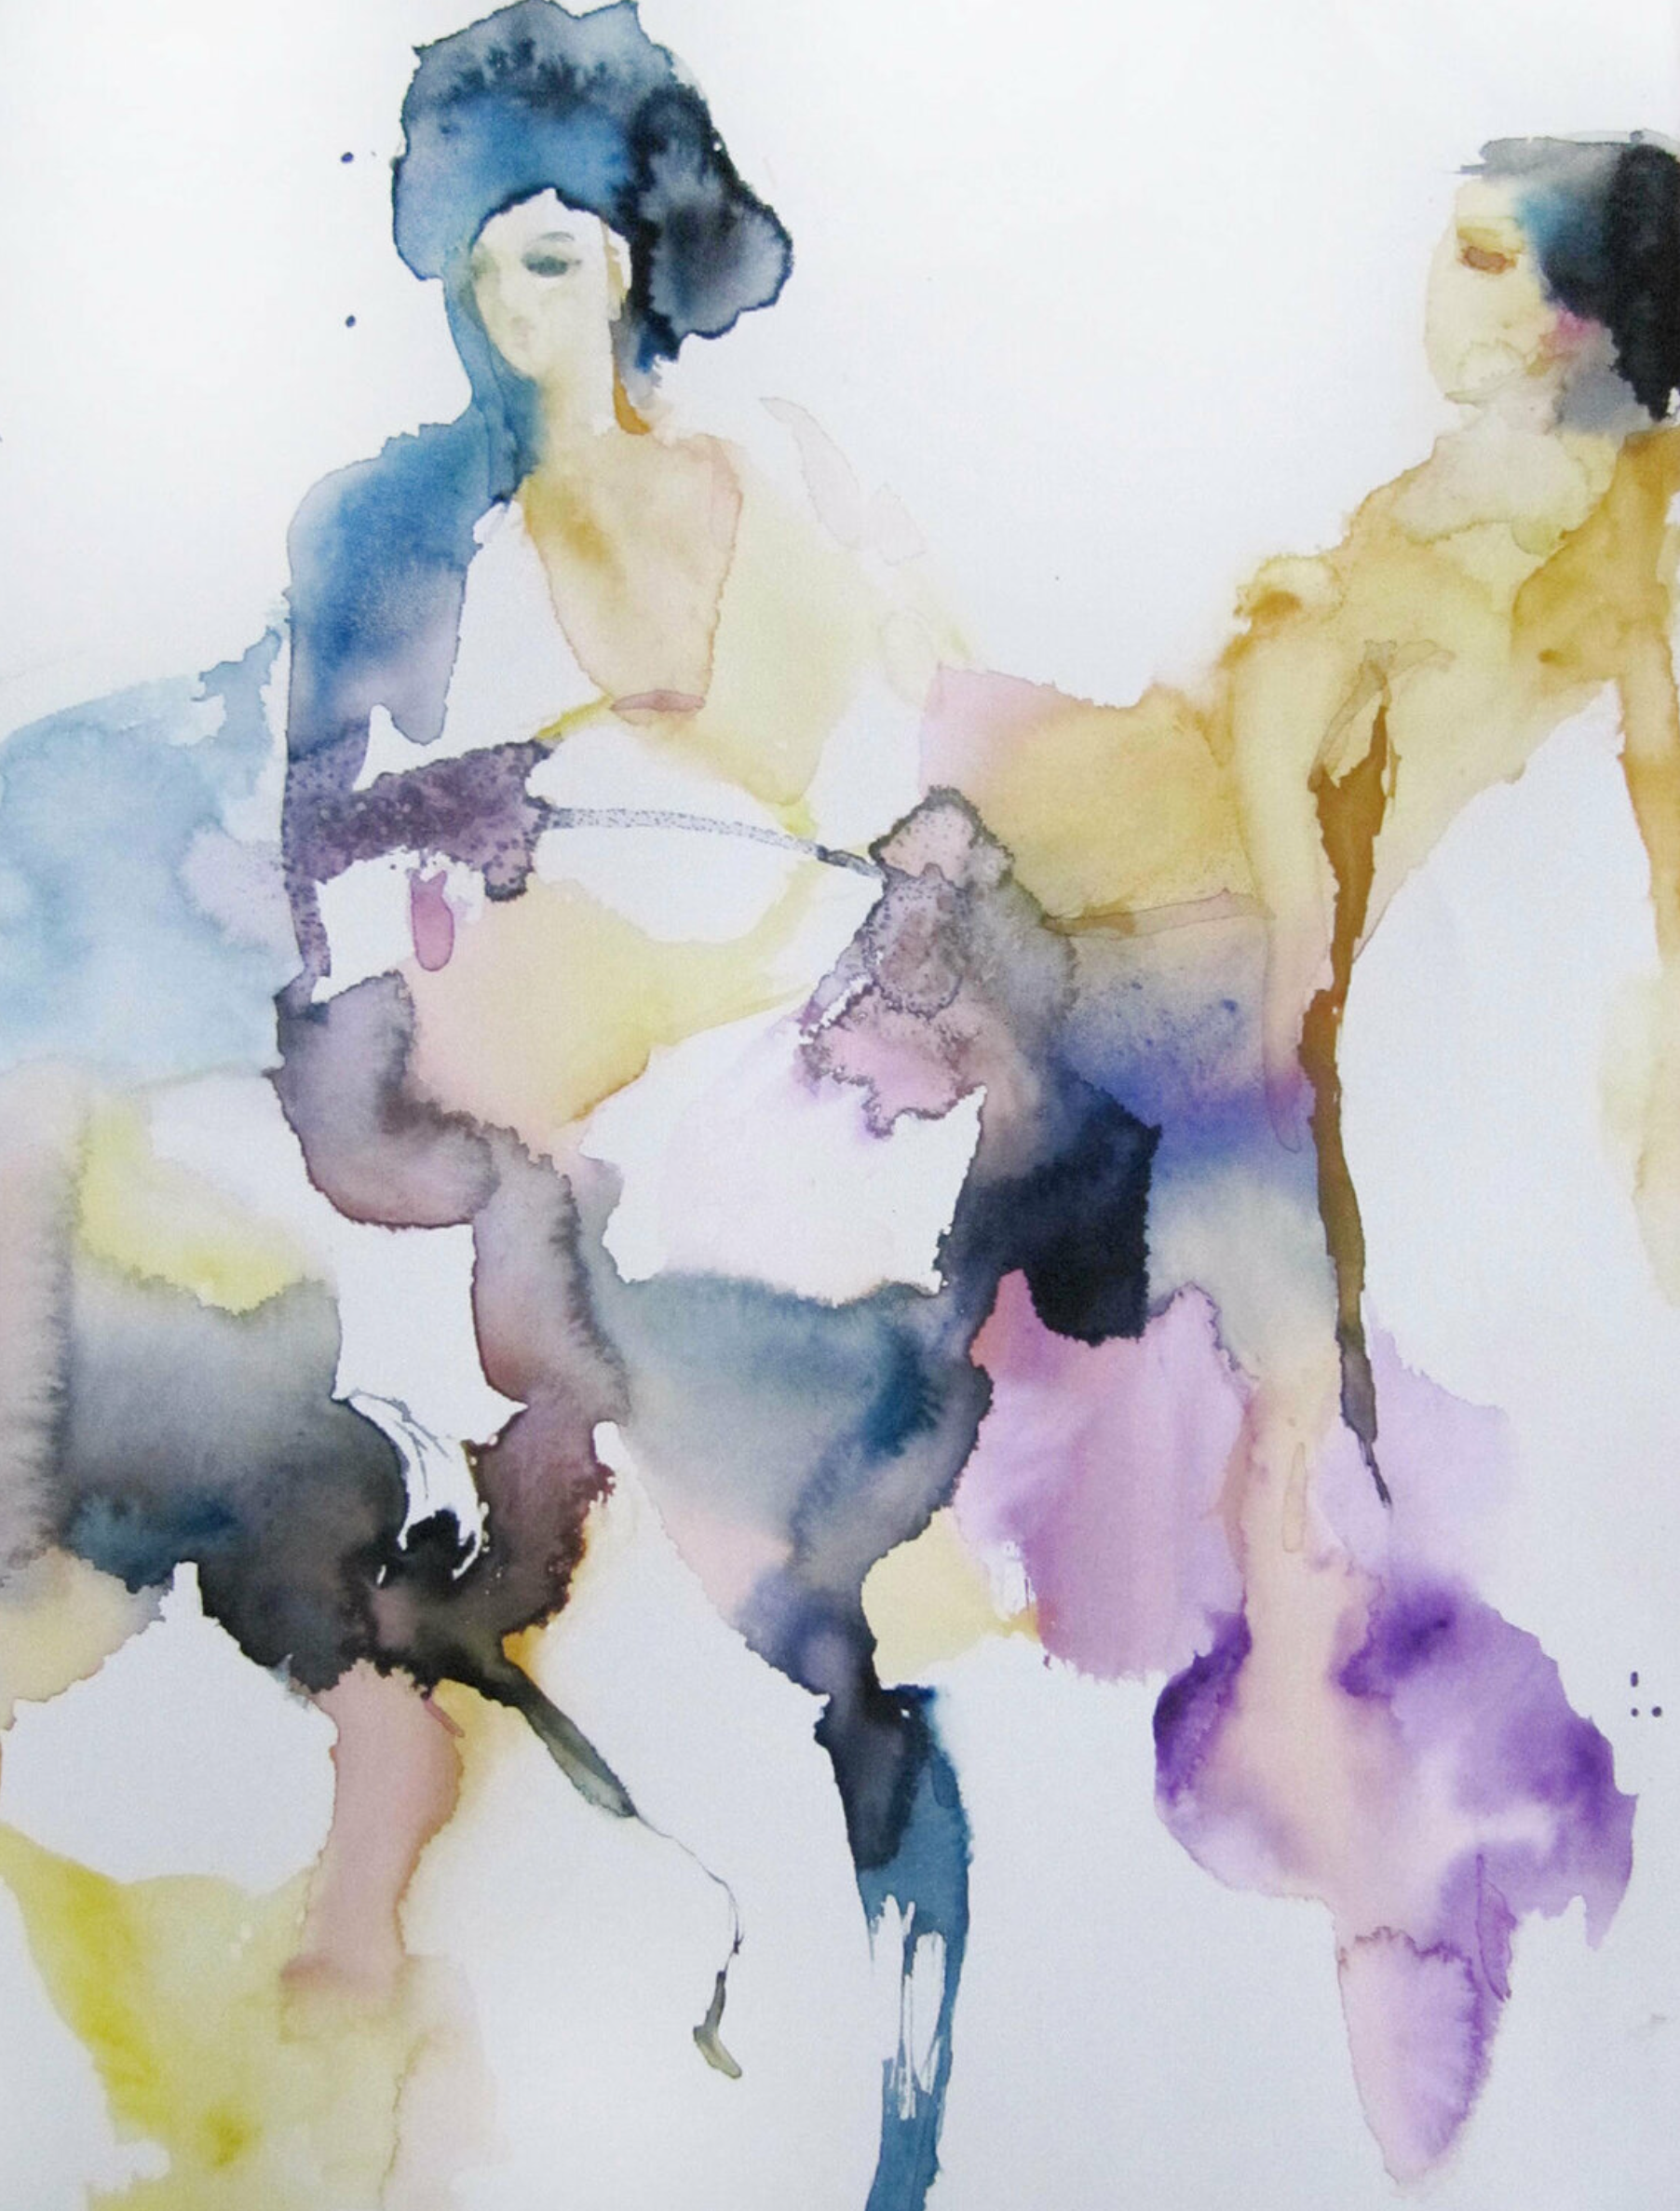 L'opera "Transmission" di Sylvia Baldeva è un dipinto ad acquerello semi-astratto. 2 Donne, Seduzione, Femminilità, Corpo femminile, Espressionismo, Acquerello su carta Canson®.